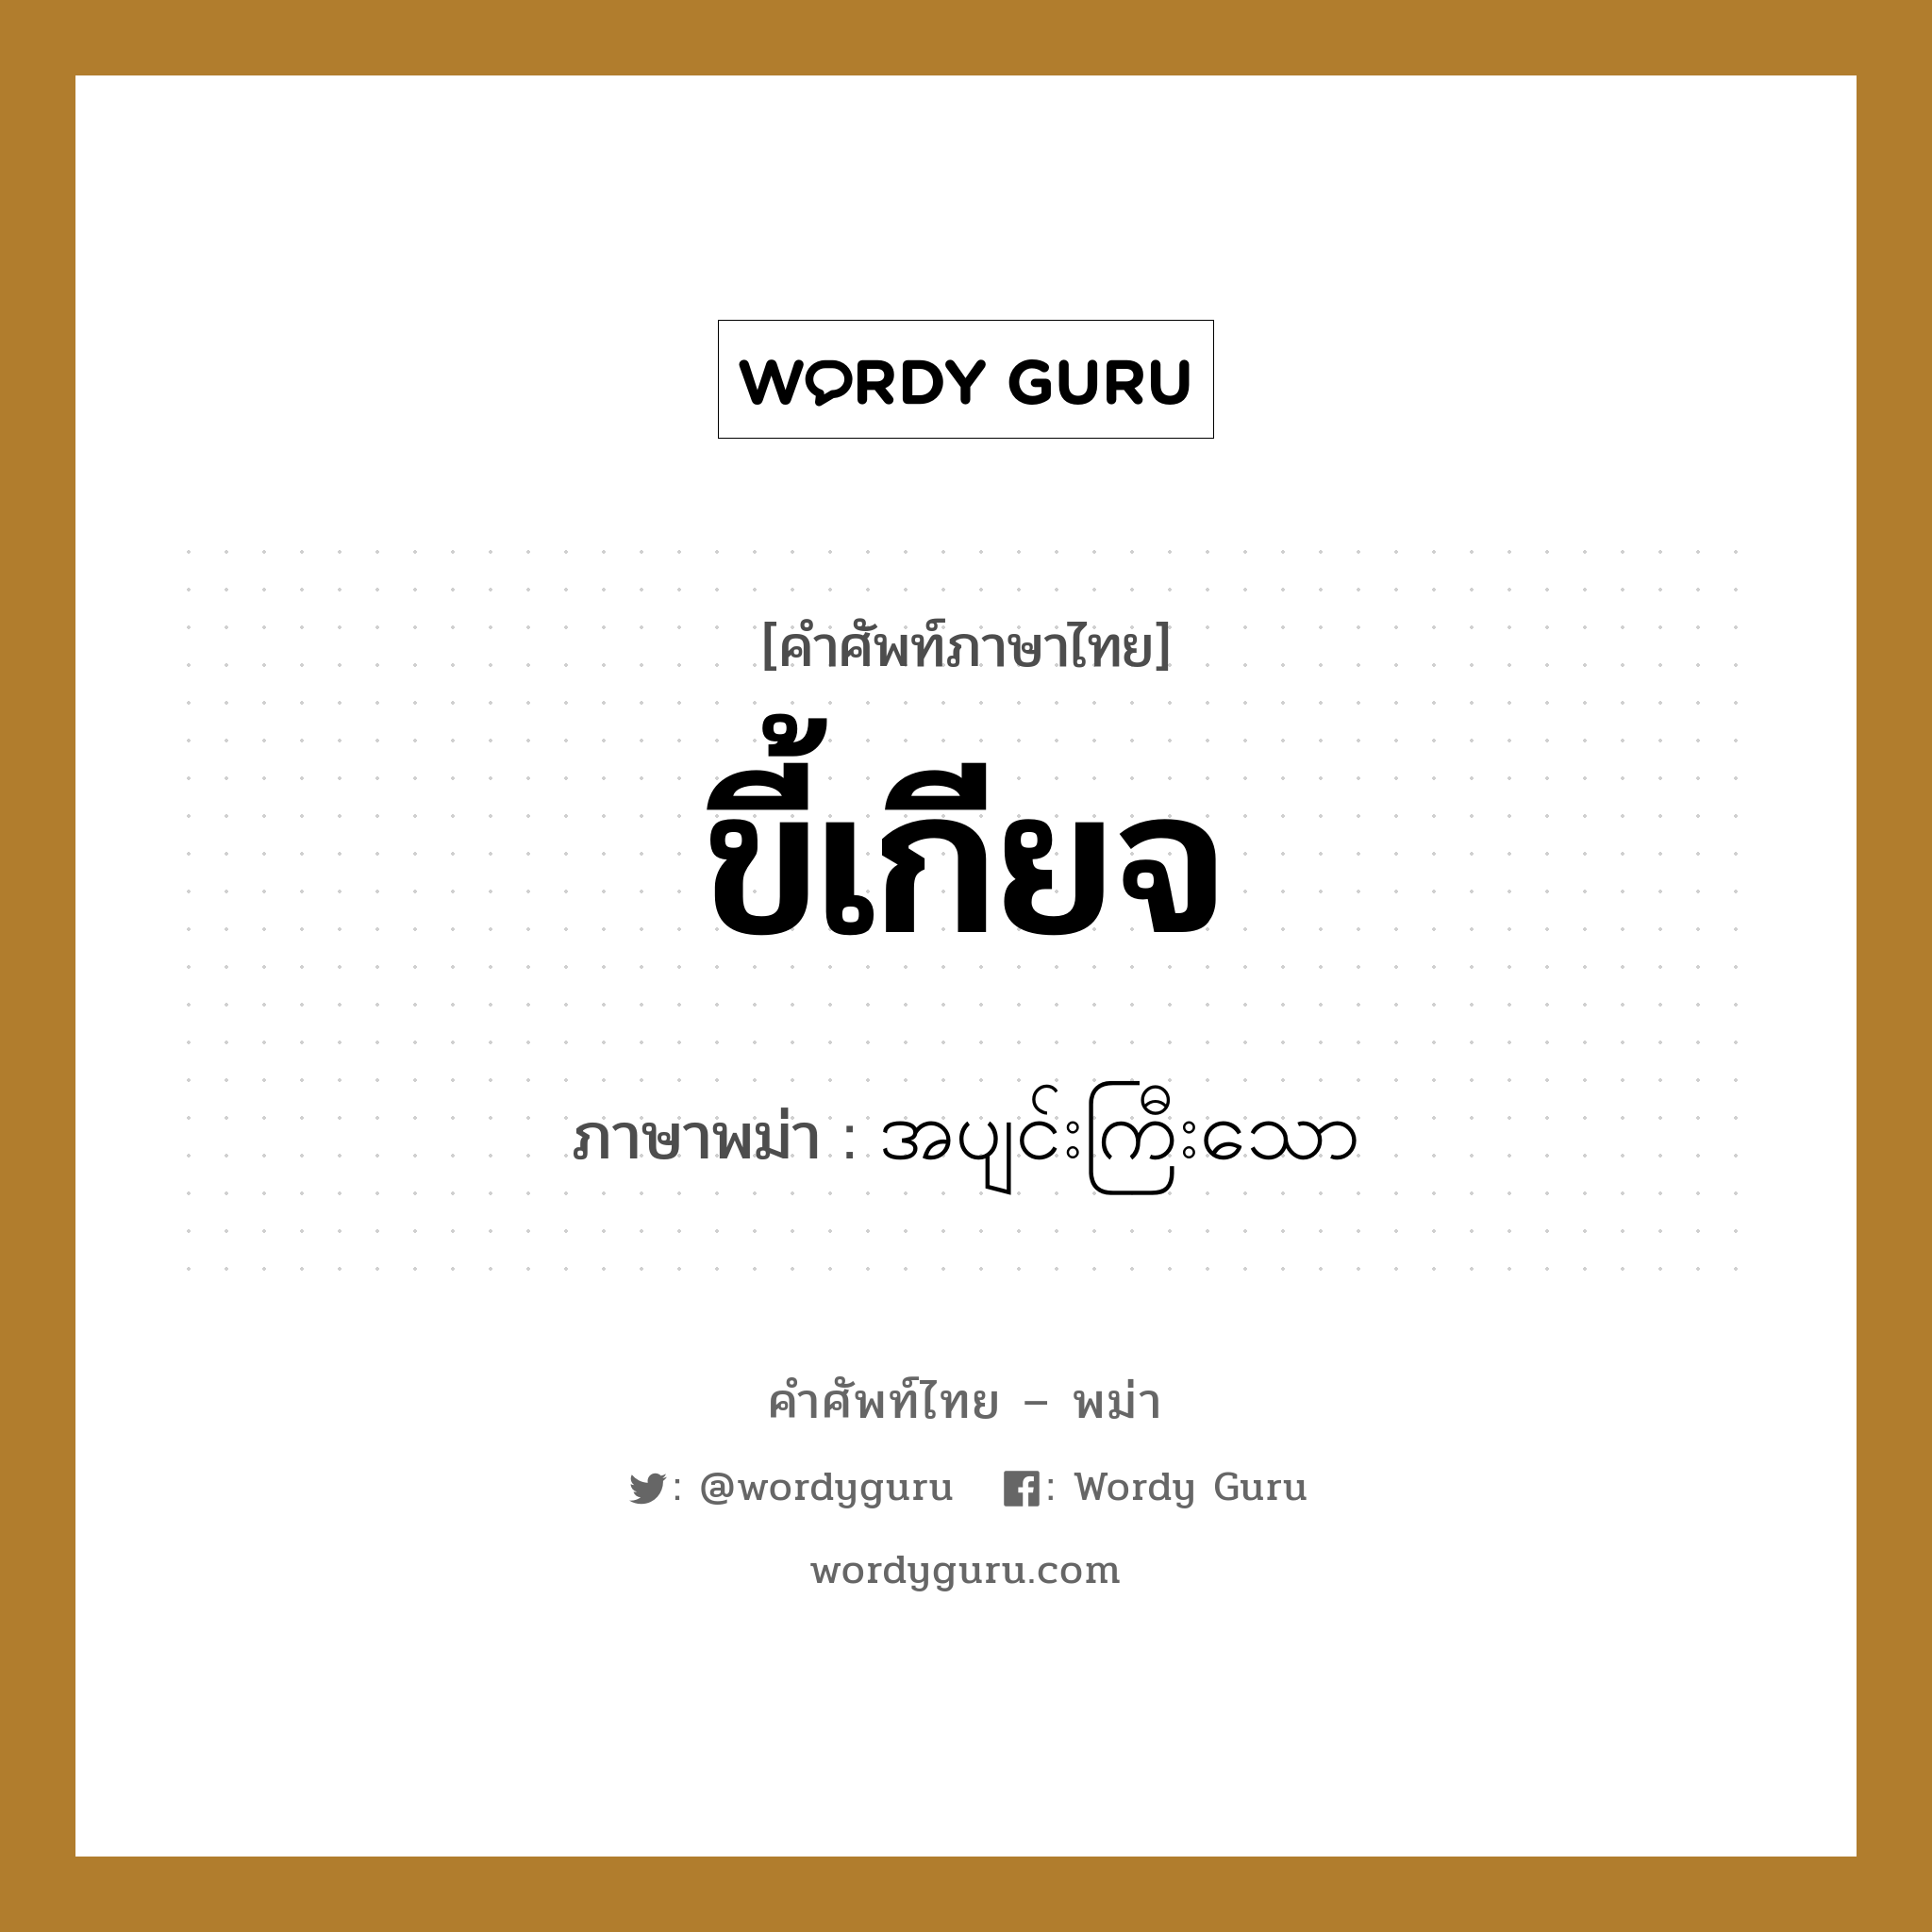 ขี้เกียจ ภาษาพม่าคืออะไร, คำศัพท์ภาษาไทย - พม่า ขี้เกียจ ภาษาพม่า အပျင်းကြီးသော หมวด ทั่วไป หมวด ทั่วไป